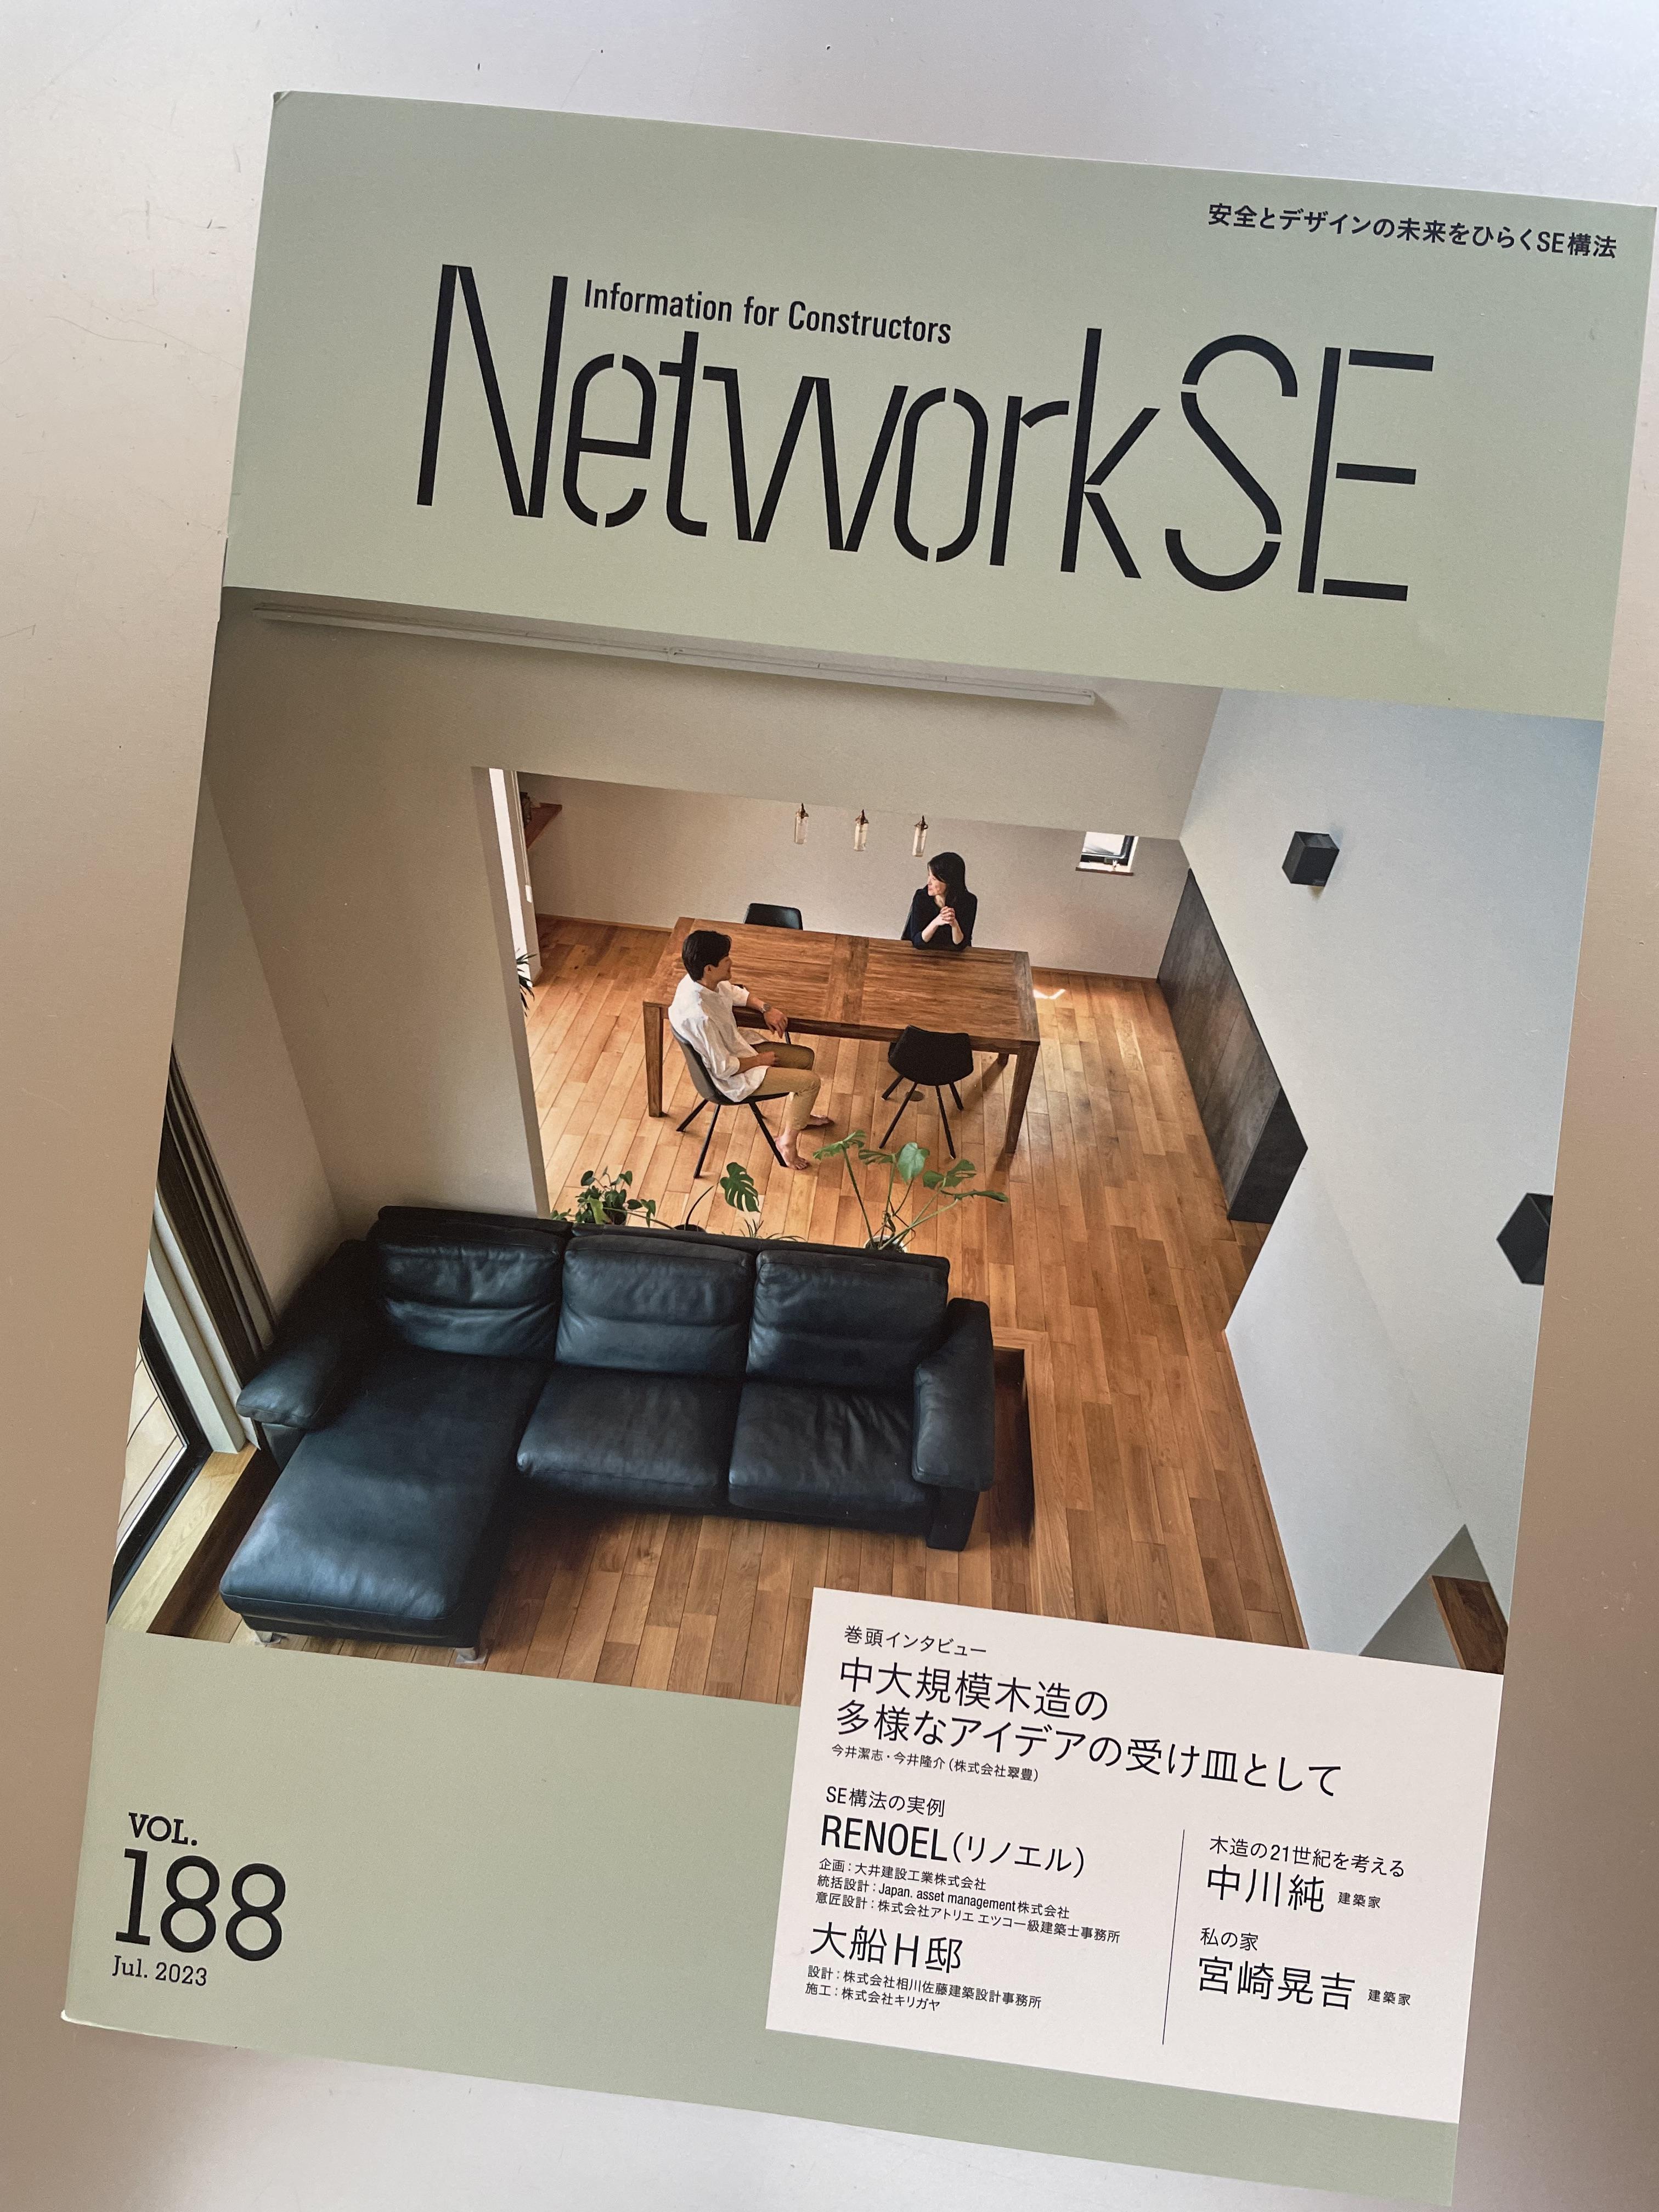 NetworkSE vol.188 Jul.2023 掲載 | アトリエエツコ 一級建築士事務所